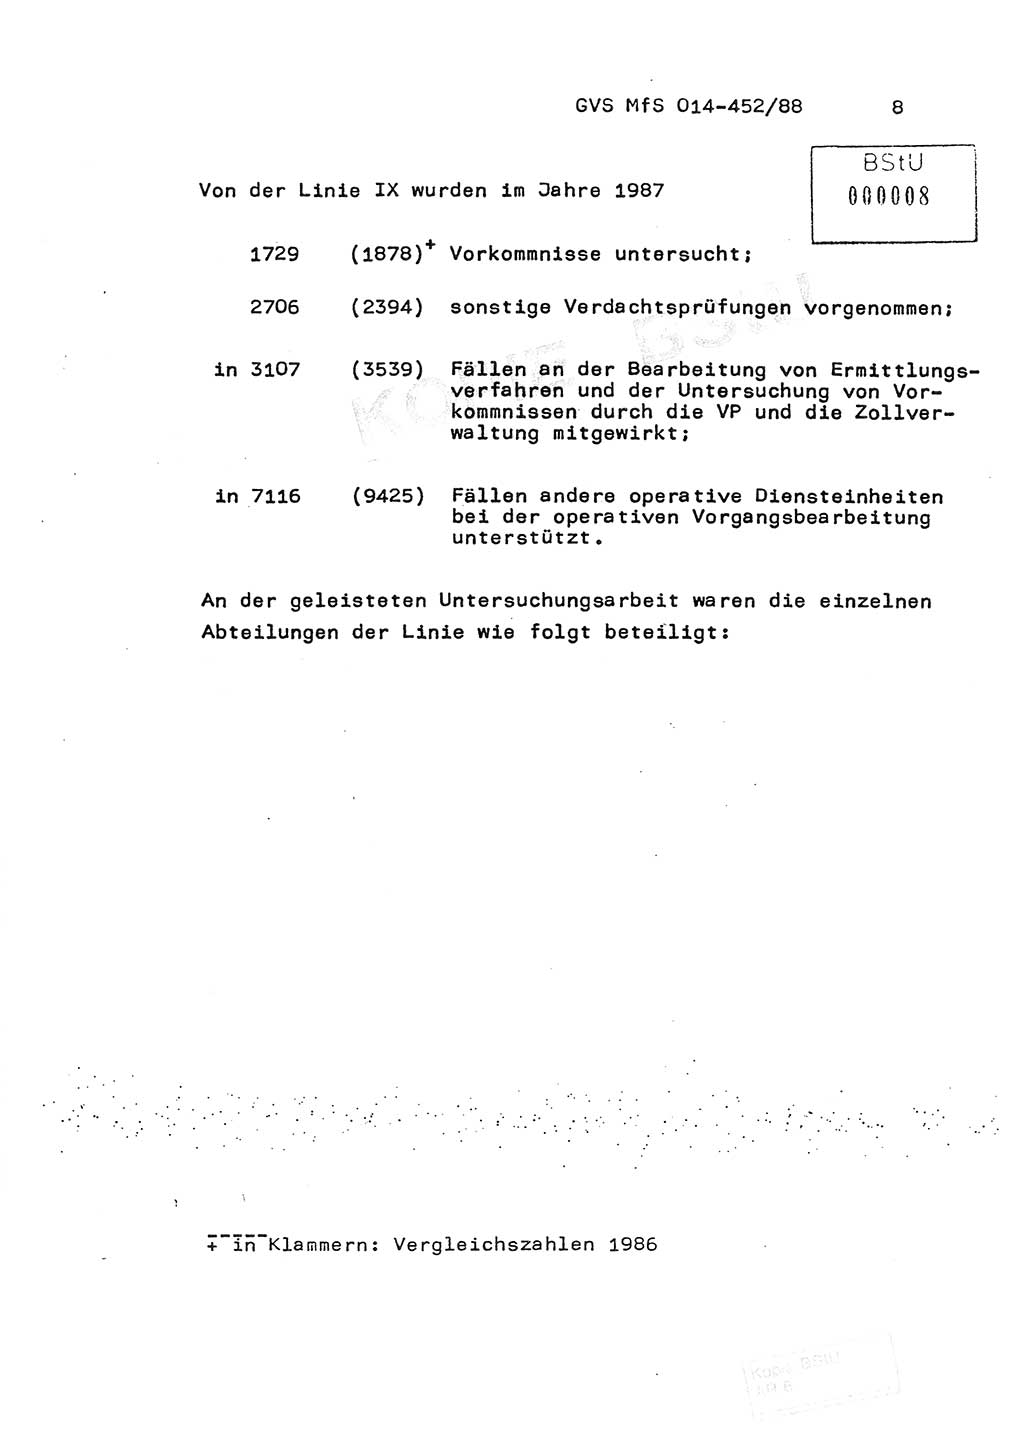 Jahresbericht der Hauptabteilung (HA) Ⅸ 1987, Einschätzung der Wirksamkeit der Untersuchungsarbeit im Jahre 1987, Ministerium für Staatssicherheit (MfS) der Deutschen Demokratischen Republik (DDR), Hauptabteilung Ⅸ, Geheime Verschlußsache (GVS) o014-452/88, Berlin 1988, Seite 8 (Einsch. MfS DDR HA Ⅸ GVS o014-452/88 1987, S. 8)